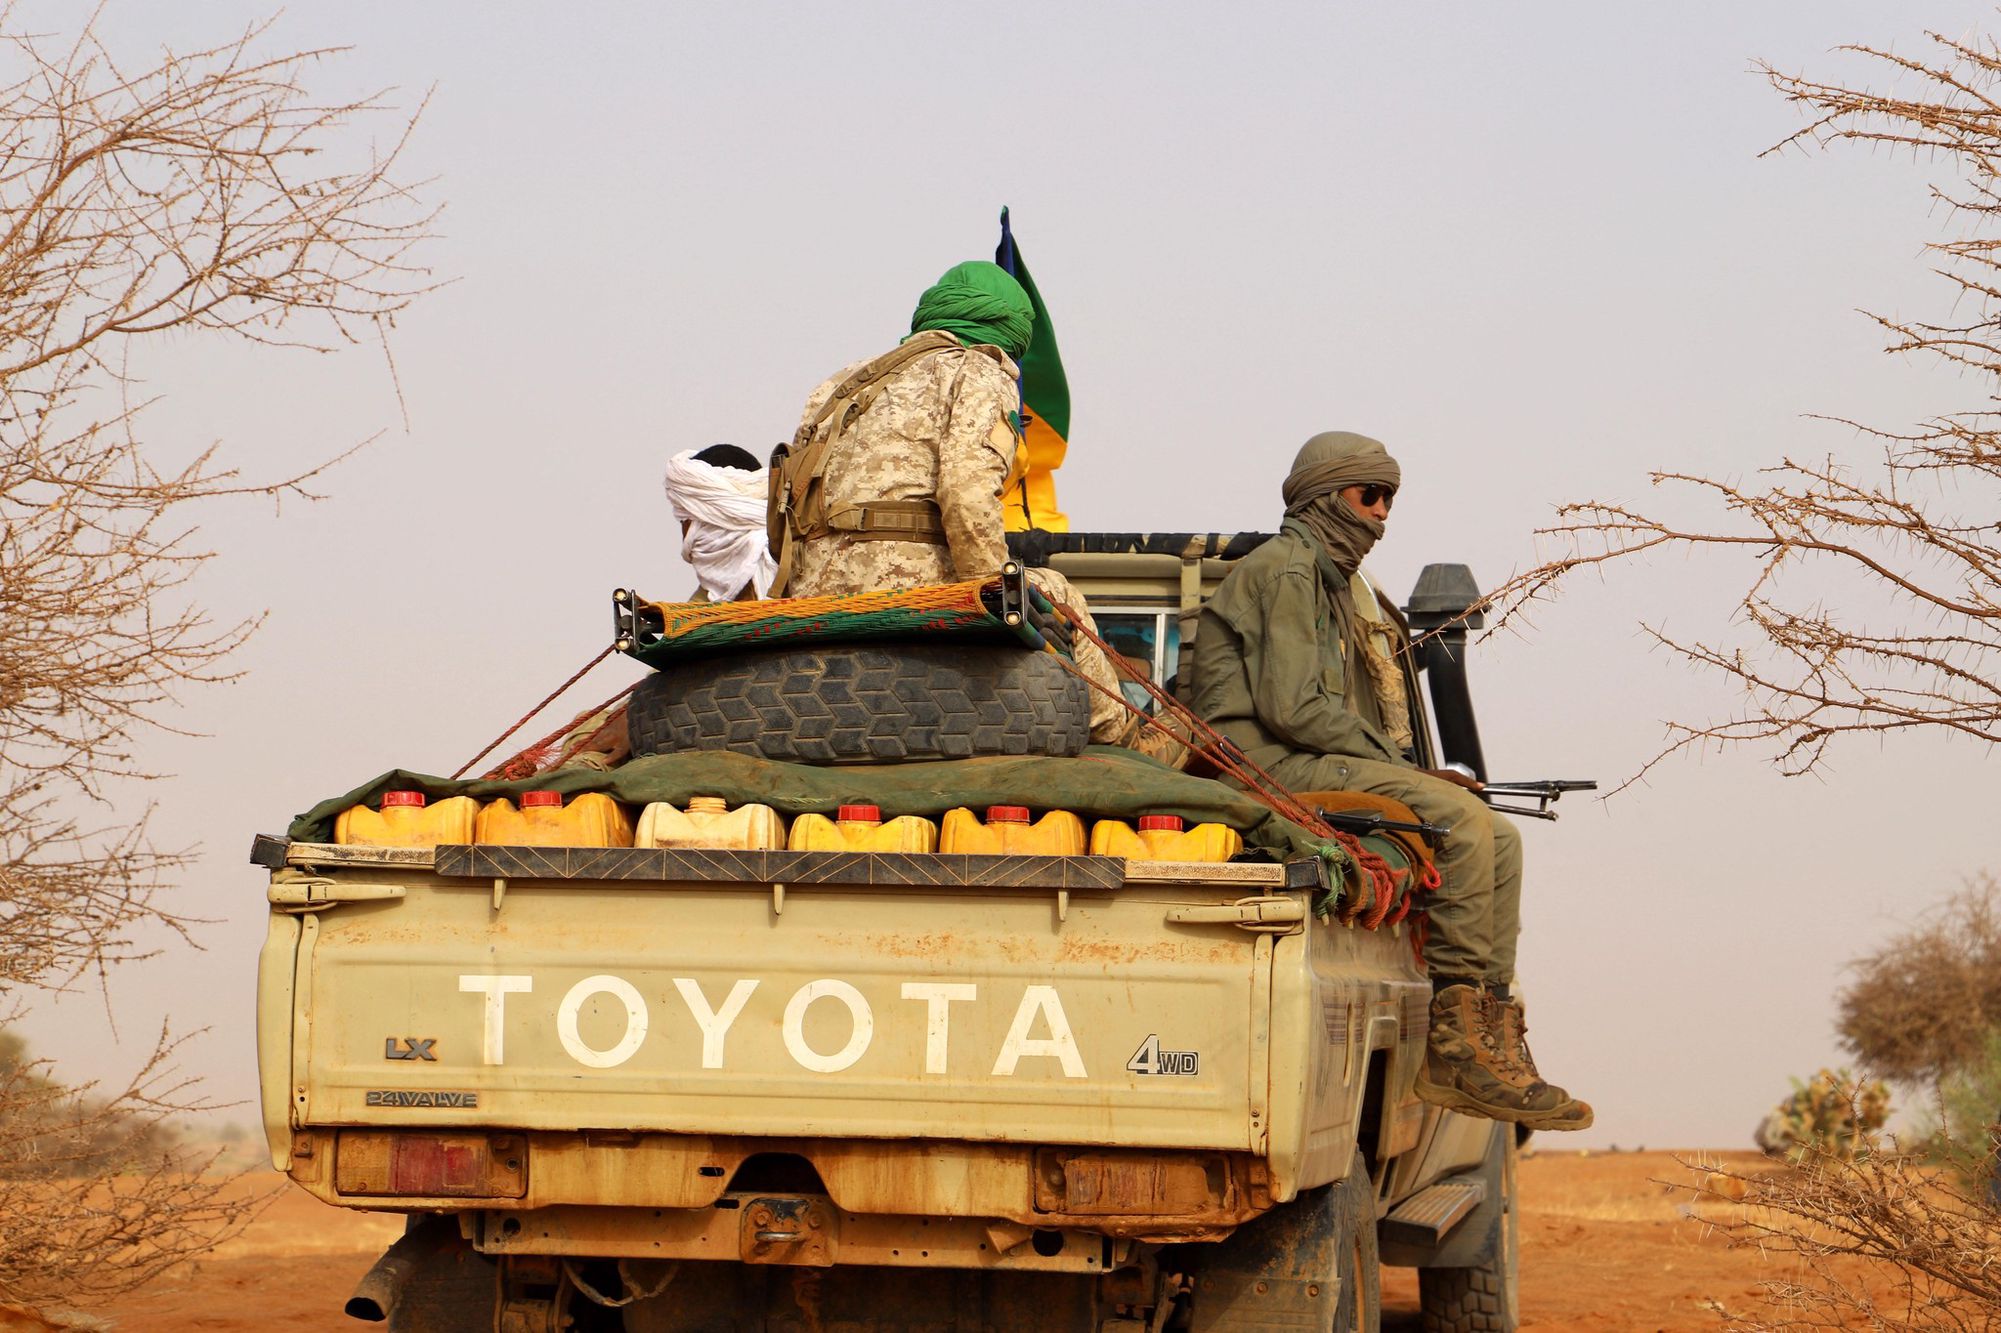 Mali: nouveaux combats au nord entre l'armée et des groupes rebelles